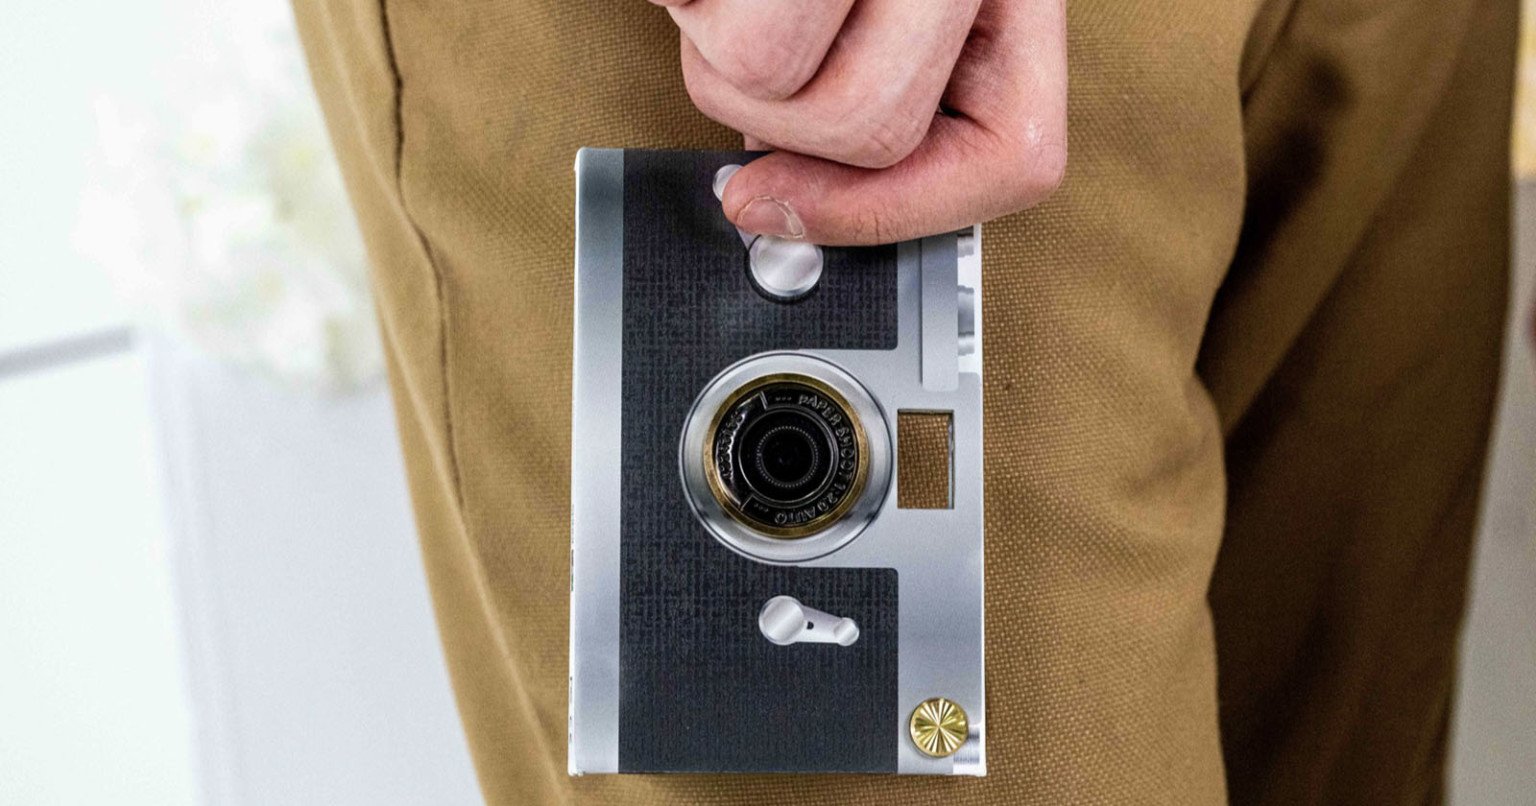 Đây là máy ảnh kĩ thuật số làm từ giấy và có độ phân giải 16MP